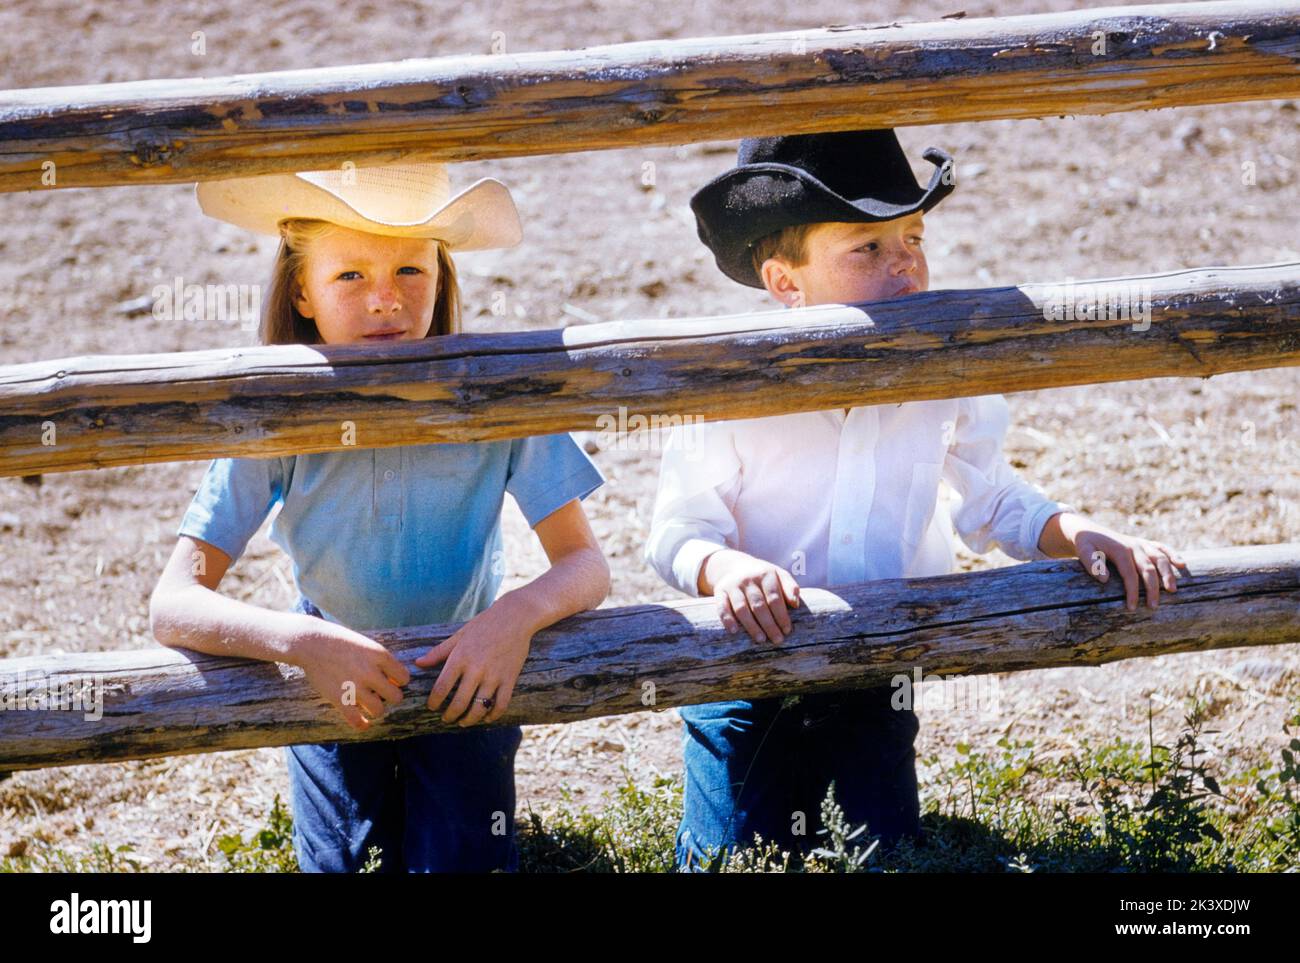 Giovane ragazzo e ragazza al Dude Ranch, Wilson Wyoming, USA, toni Frissell Collection, 1958 Foto Stock